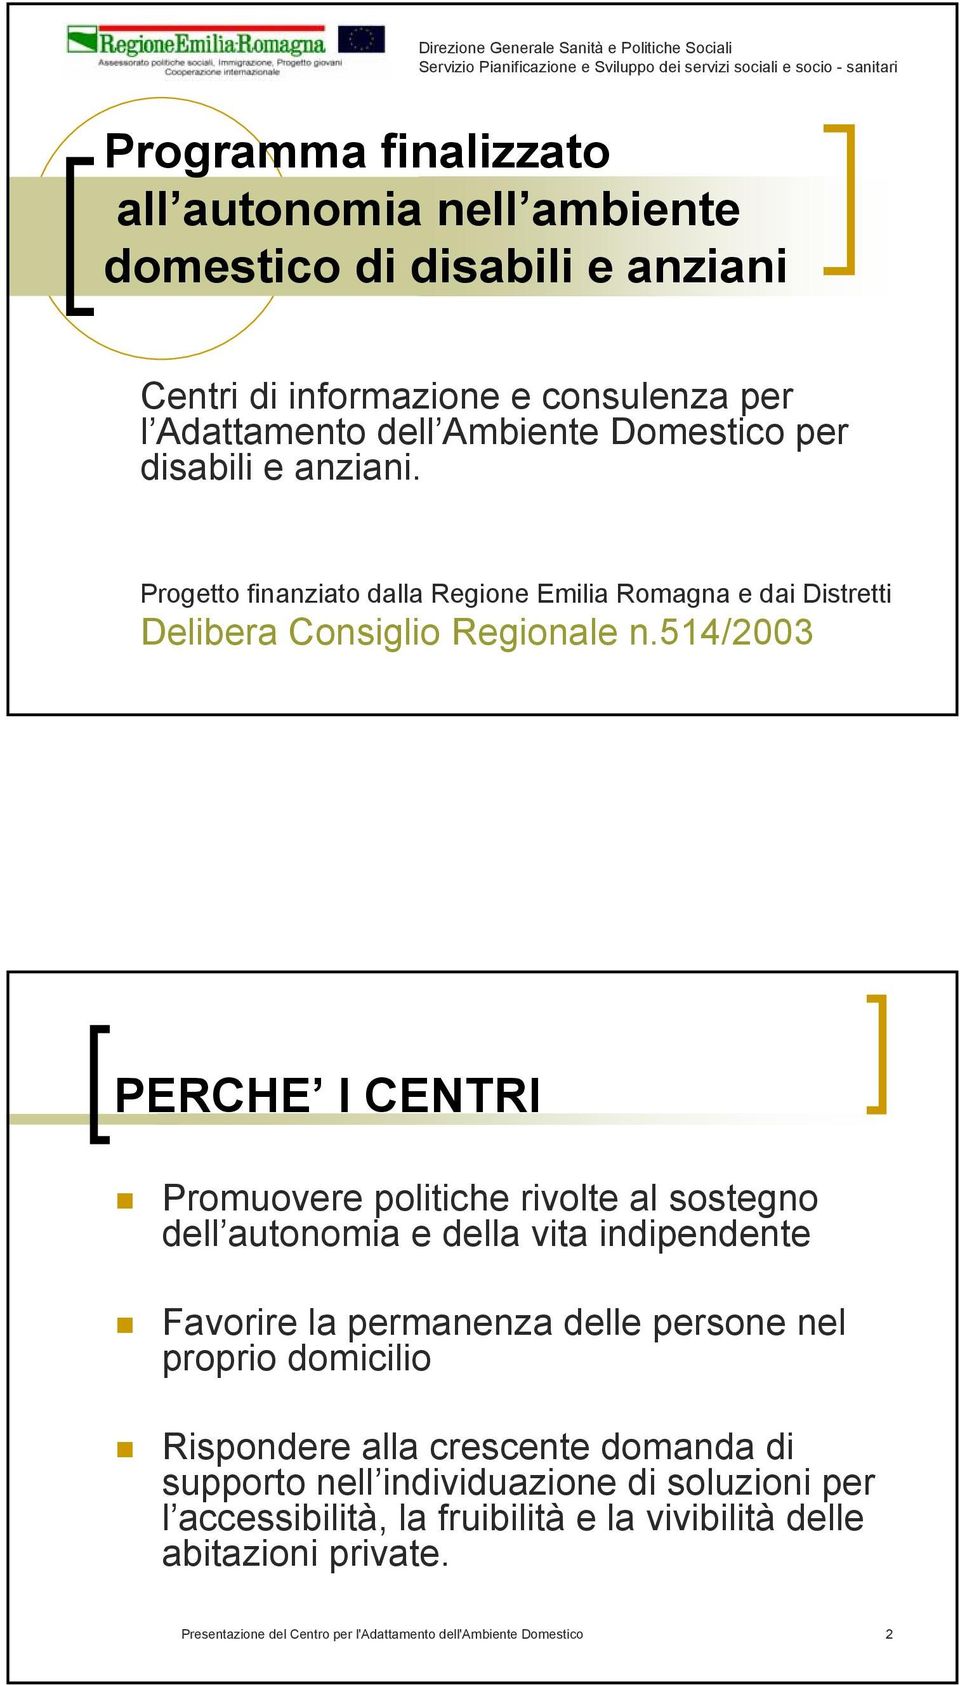 Progetto finanziato dalla Regione Emilia Romagna e dai Distretti Delibera Consiglio Regionale n.